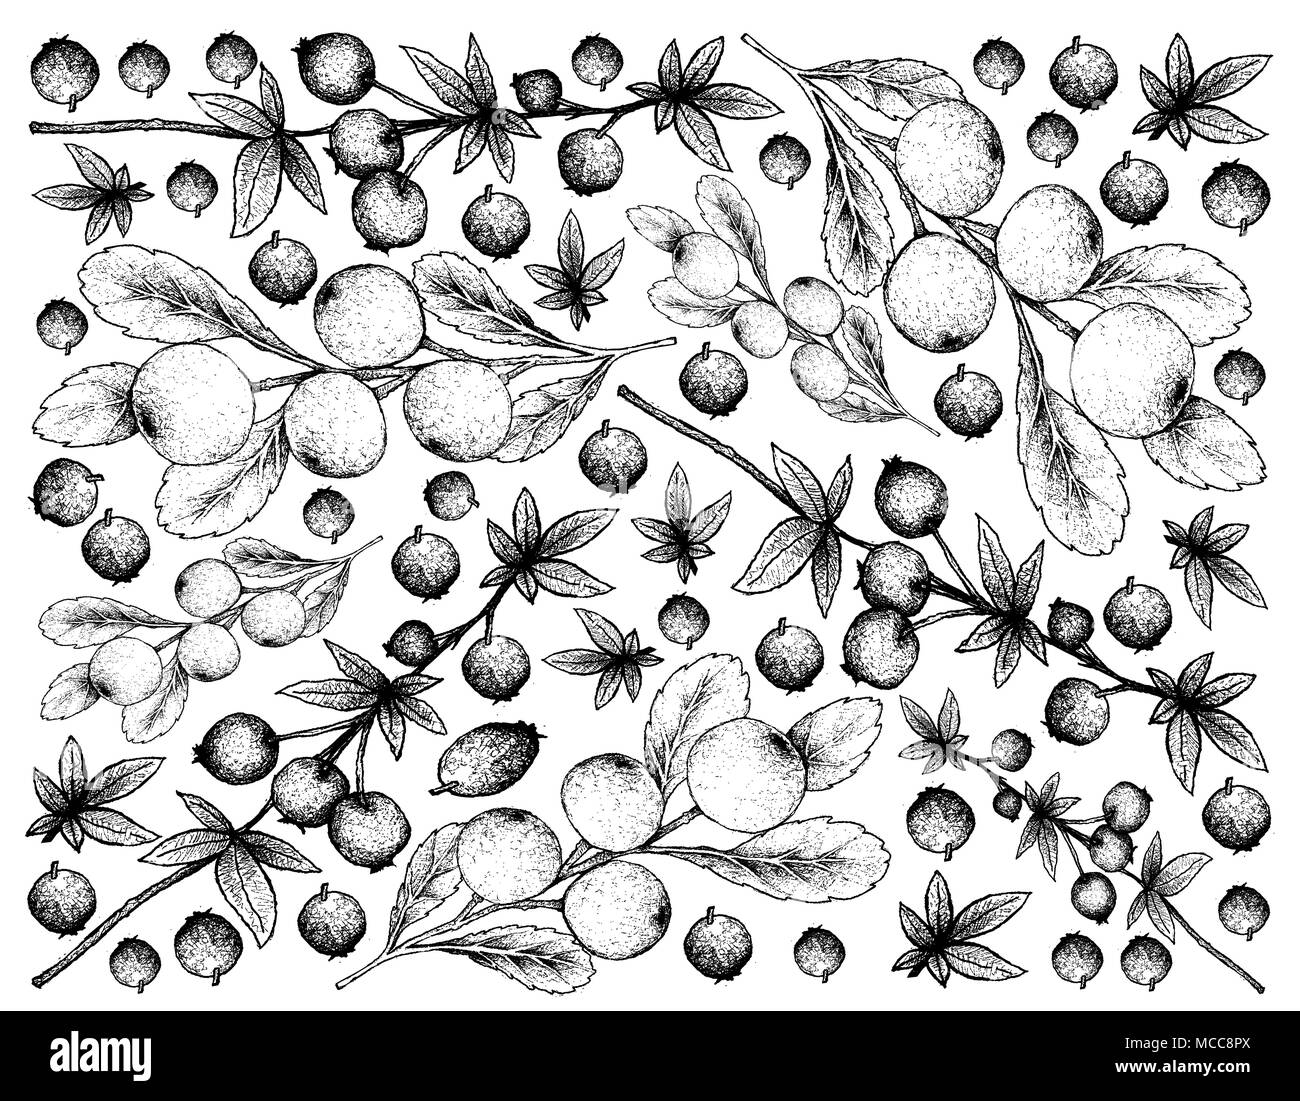 Beerenfrucht, Illustration Hintergrund von Hand gezeichnete Skizze von frischem Calafate Beeren oder Berberis Man und Cerasus Tianschanica Früchte. Stockfoto